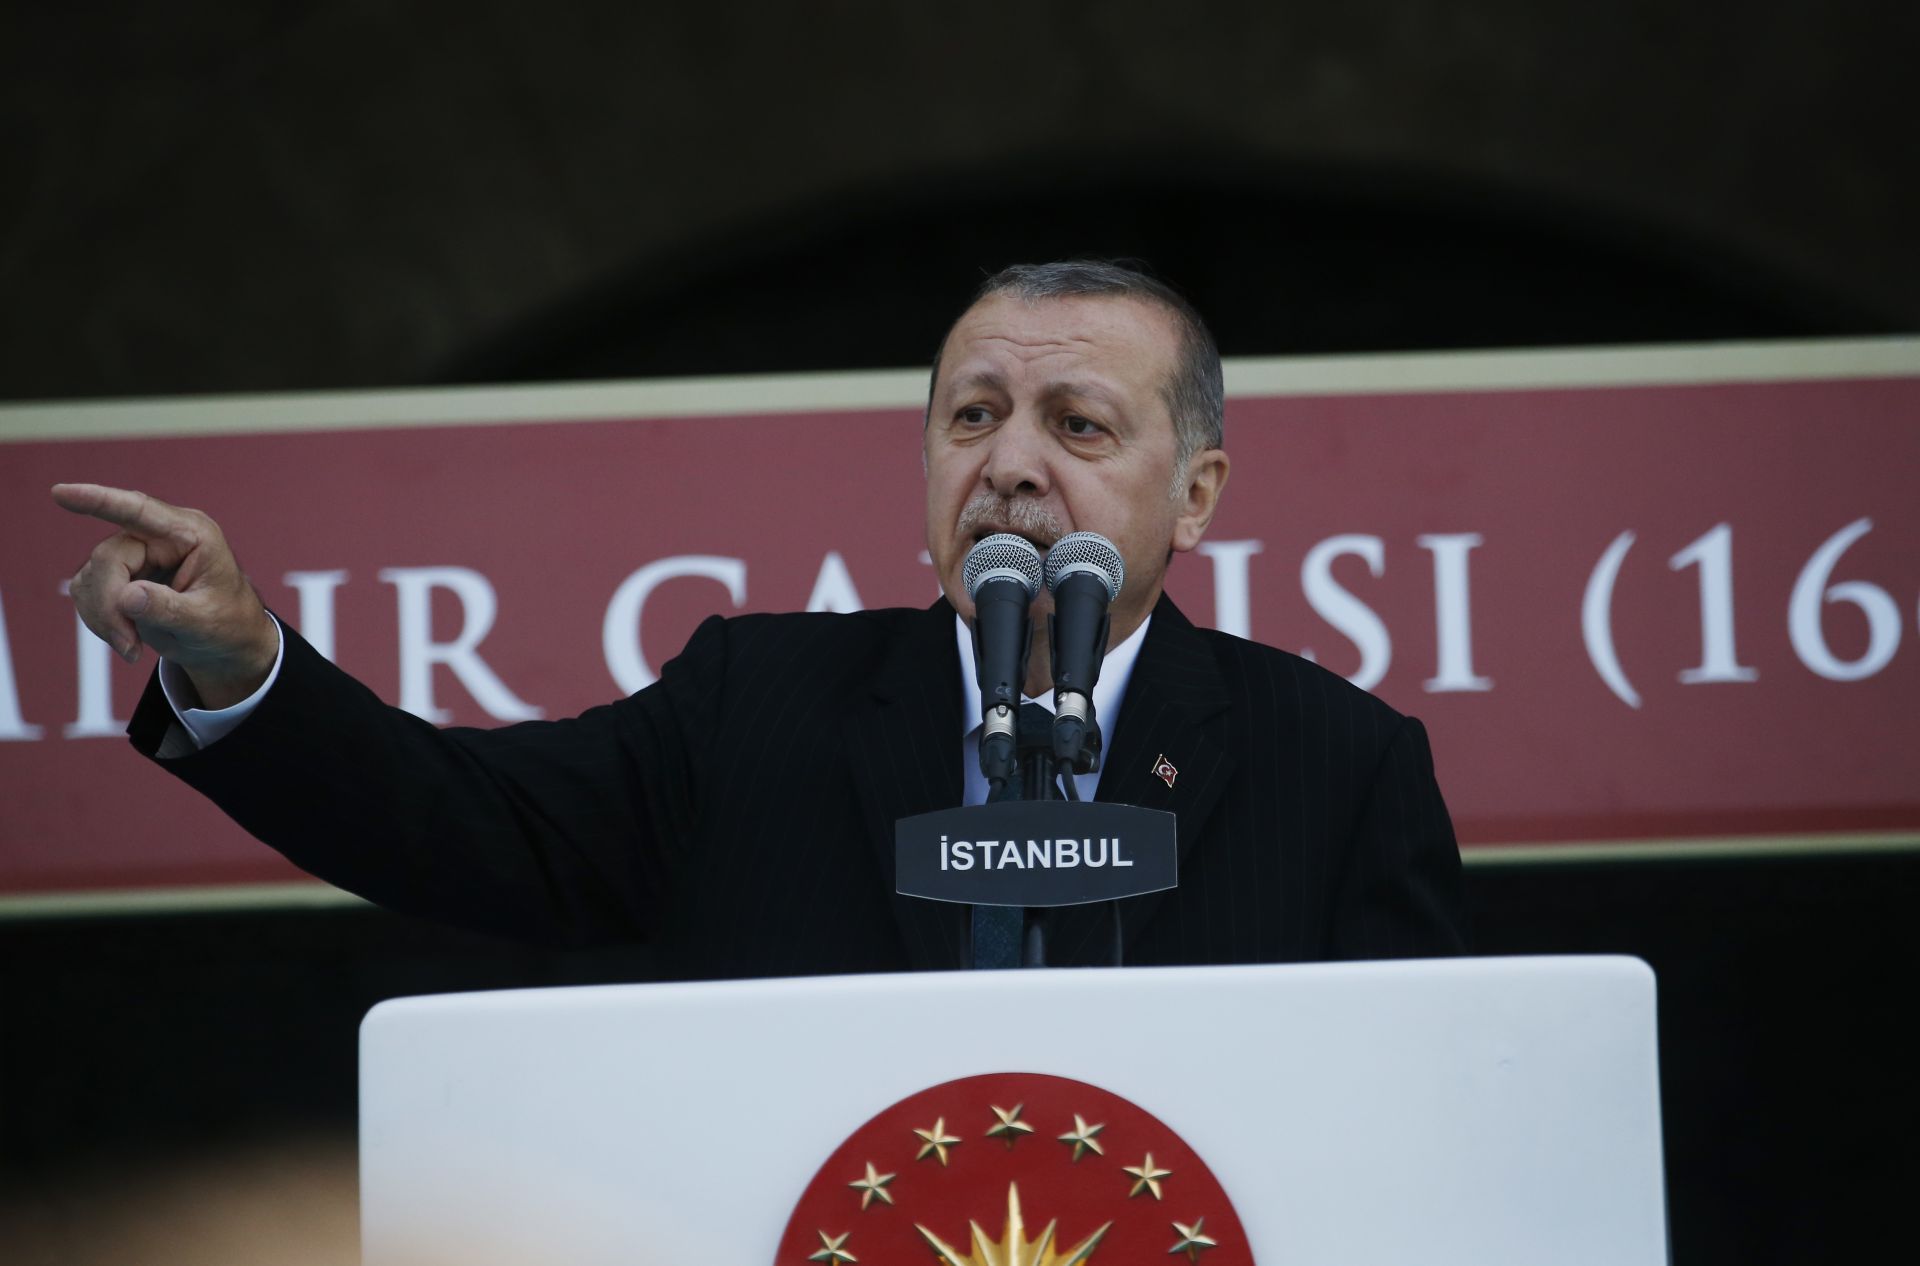 Турският президент Реджеп Тайип Ердоган призова турските граждани масово да участват в протестните изяви